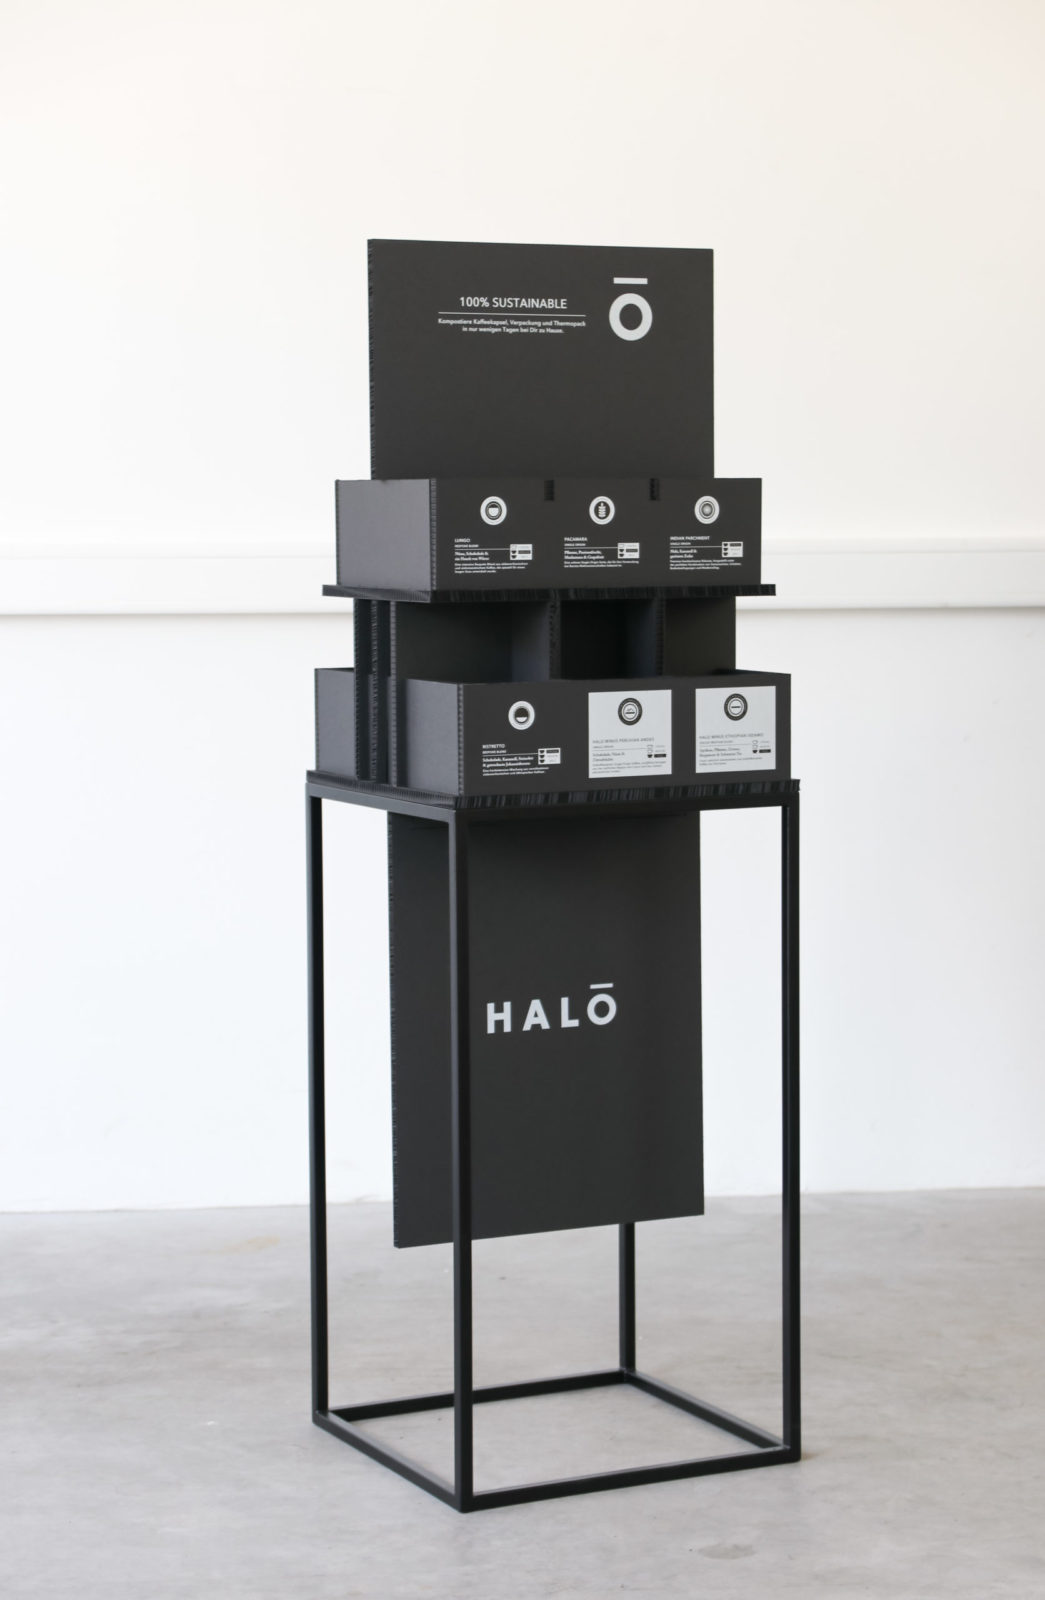 Warenpräsentation, HALO Coffee, Display für biologisch abbaubarer Kaffeekapseln, Wabenkarton, schwarz, mit Produkten und informativer Bedruckung